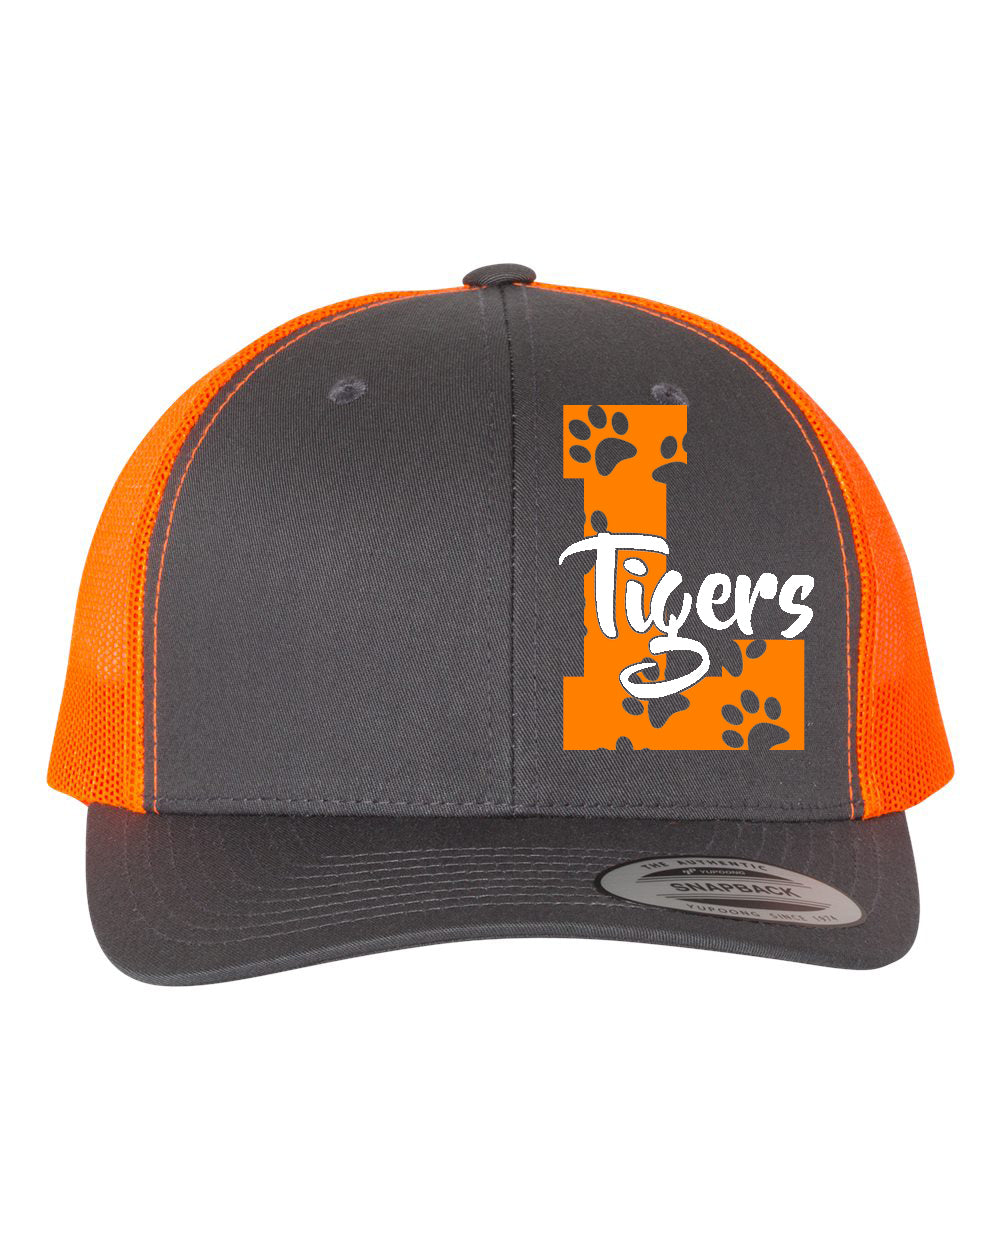 Lafayette Tigers Big L Trucker Hat